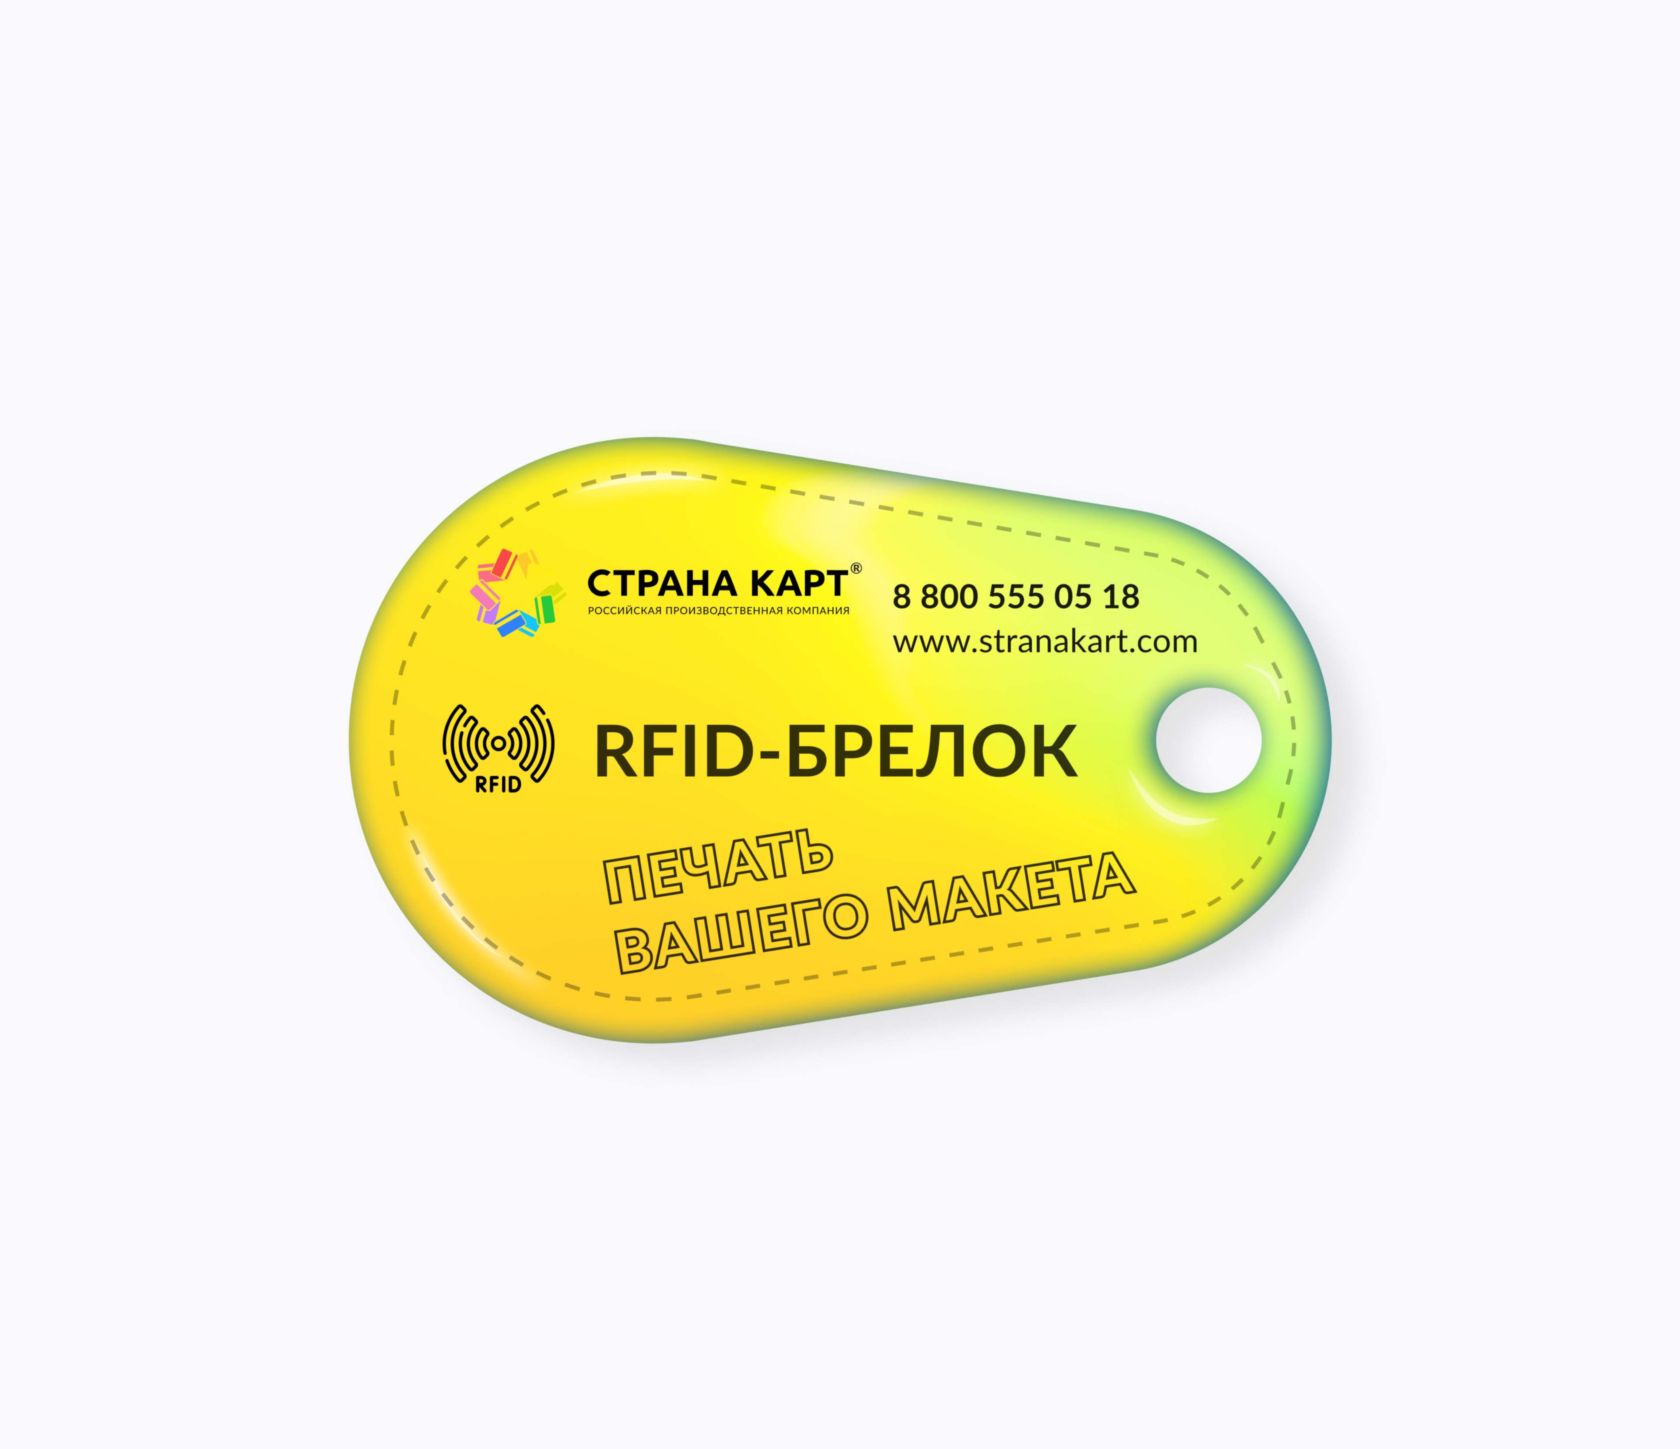 Каплевидные социальные RFID-брелоки NEOKEY® с чипом Социальные RFID-брелоки NEOKEY® с чипом